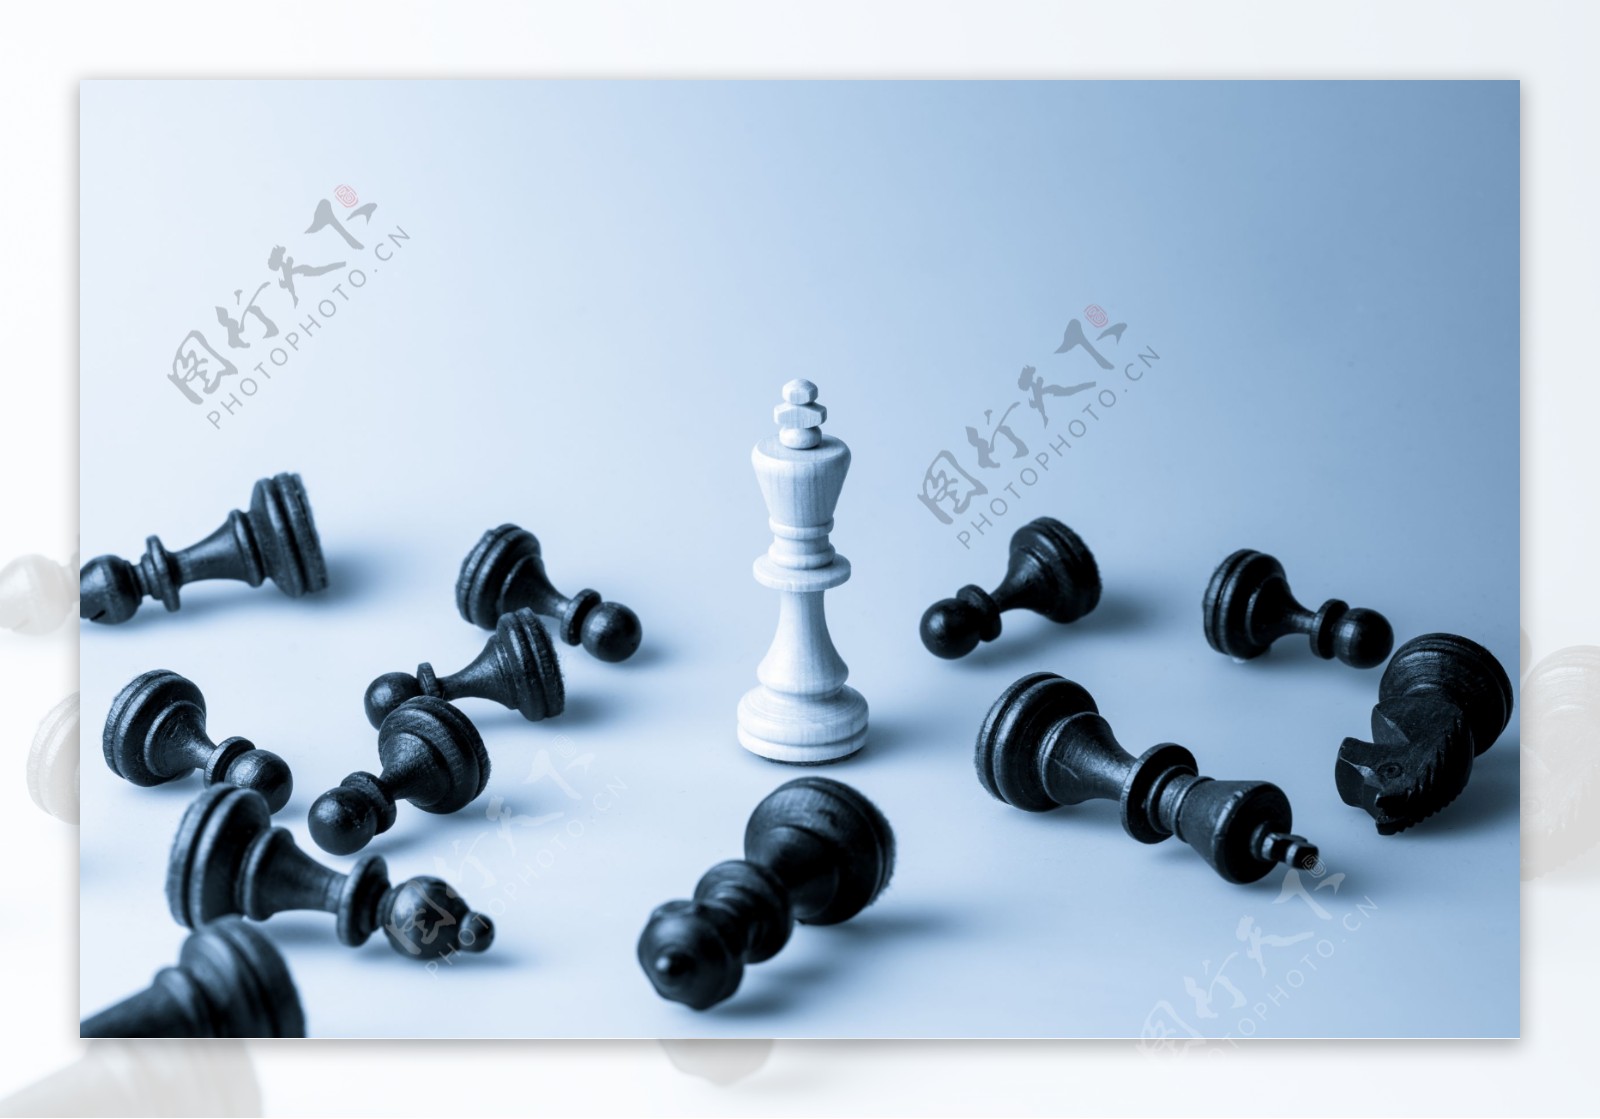 中间站立的国际象棋图片